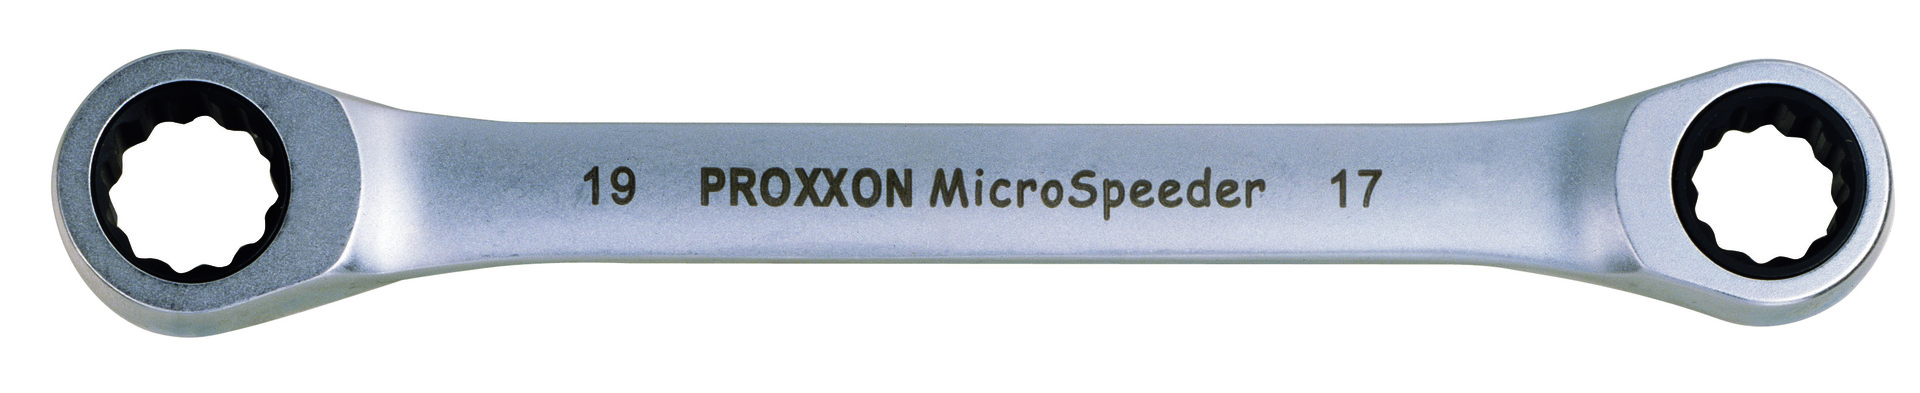 PROXXON GmbH Micro-Speeder Ratschenschlüssel 12x13mm